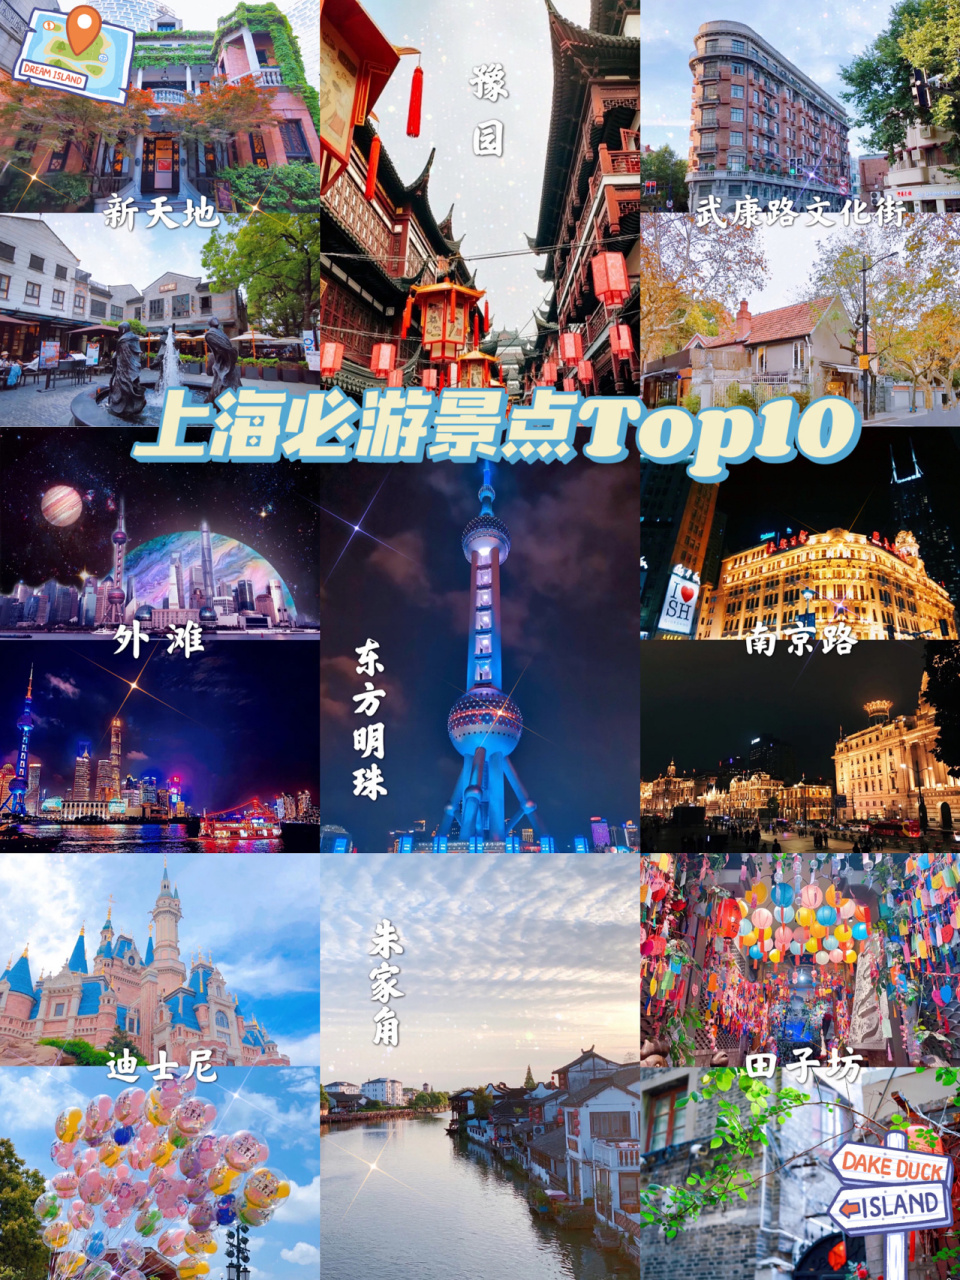 上海旅游99上海必游景点top 10 快来收藏吧 建议到上海旅游的小伙伴